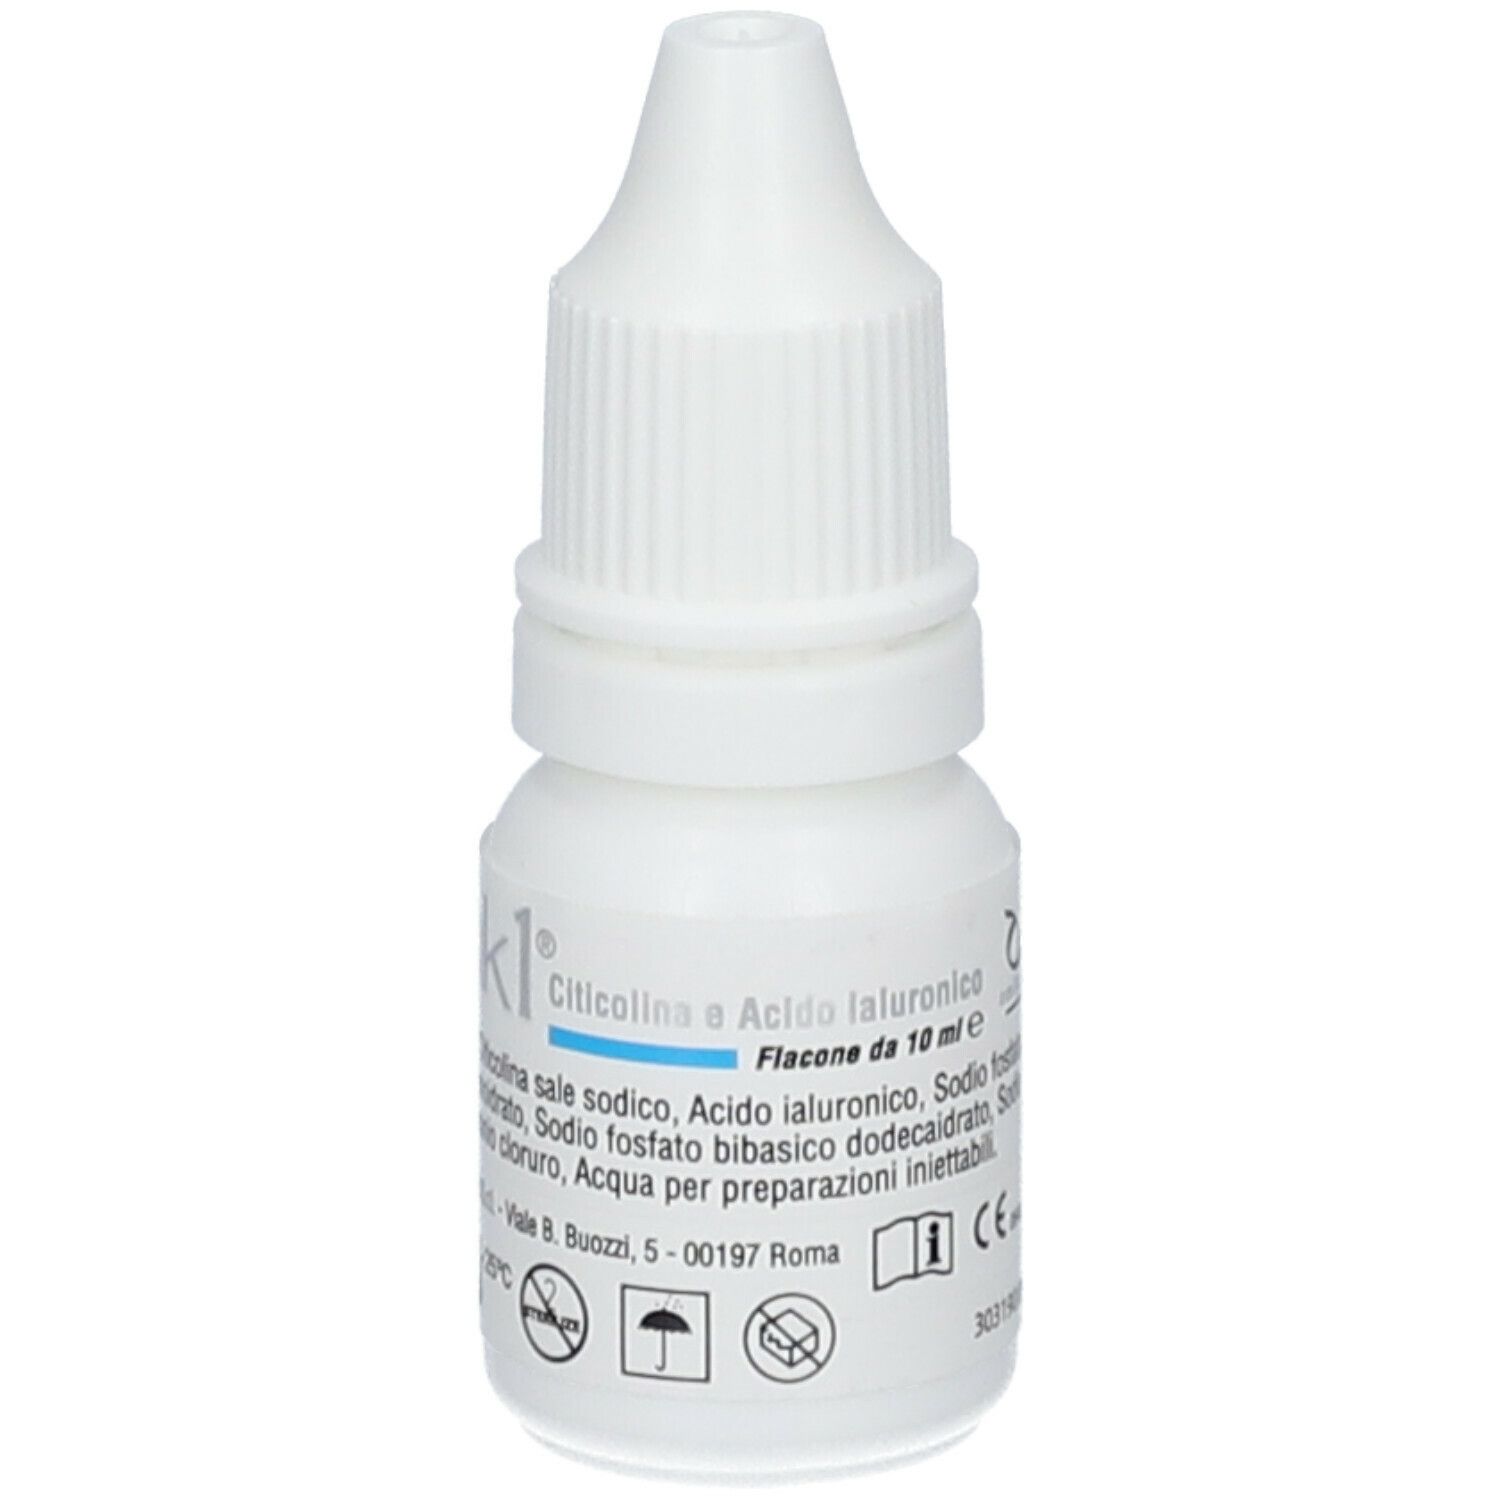 Omk1® Soluzione oftalmica sterile